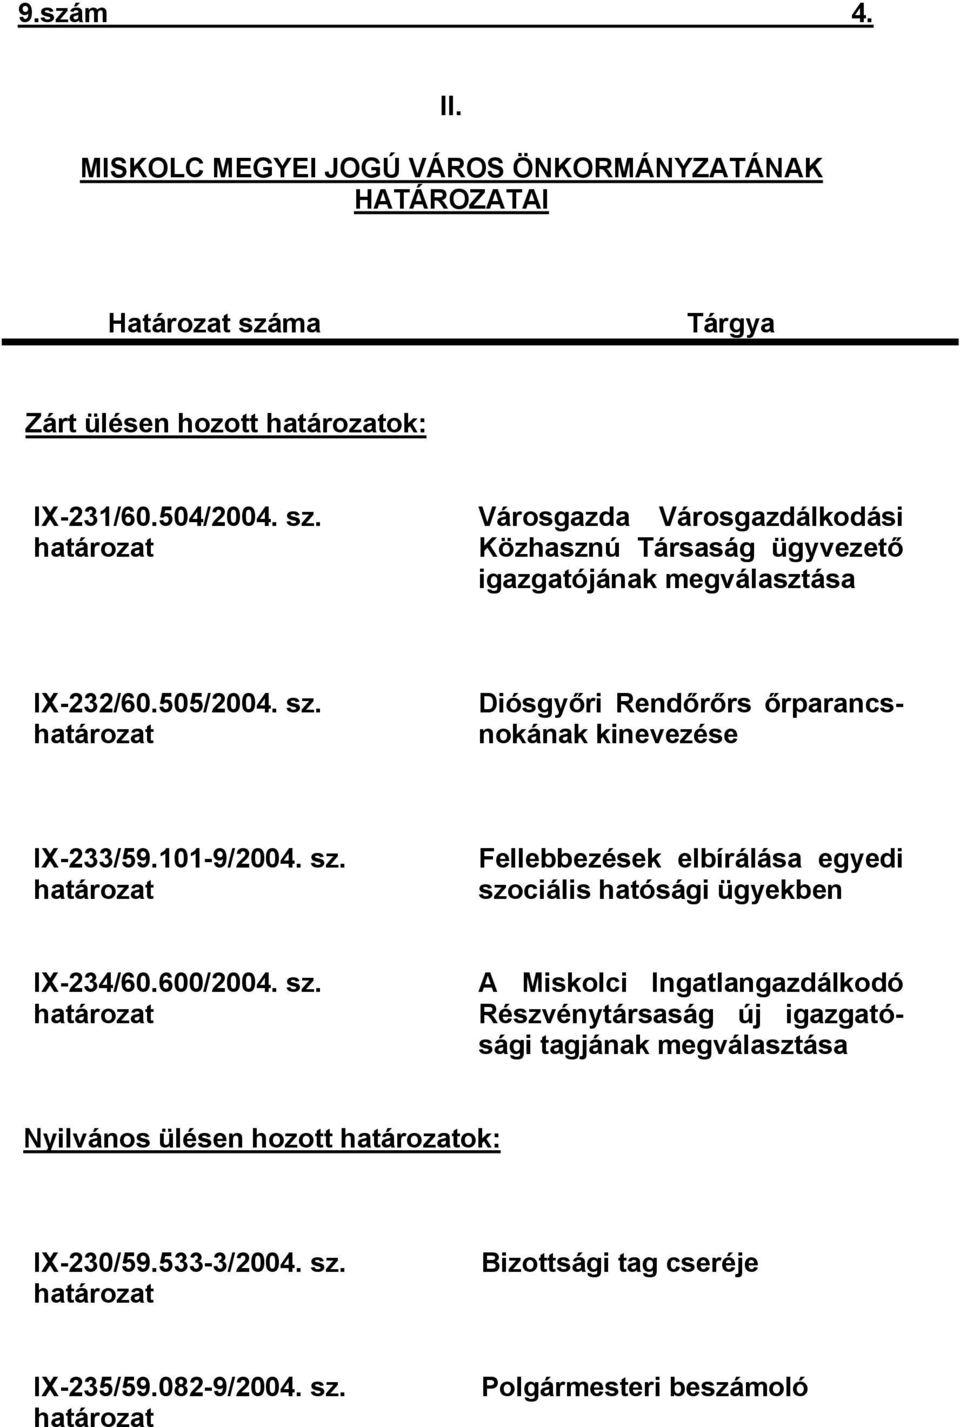 505/2004. sz. határozat Diósgyőri Rendőrőrs őrparancsnokának kinevezése IX-233/59.101-9/2004. sz. határozat Fellebbezések elbírálása egyedi szociális hatósági ügyekben IX-234/60.